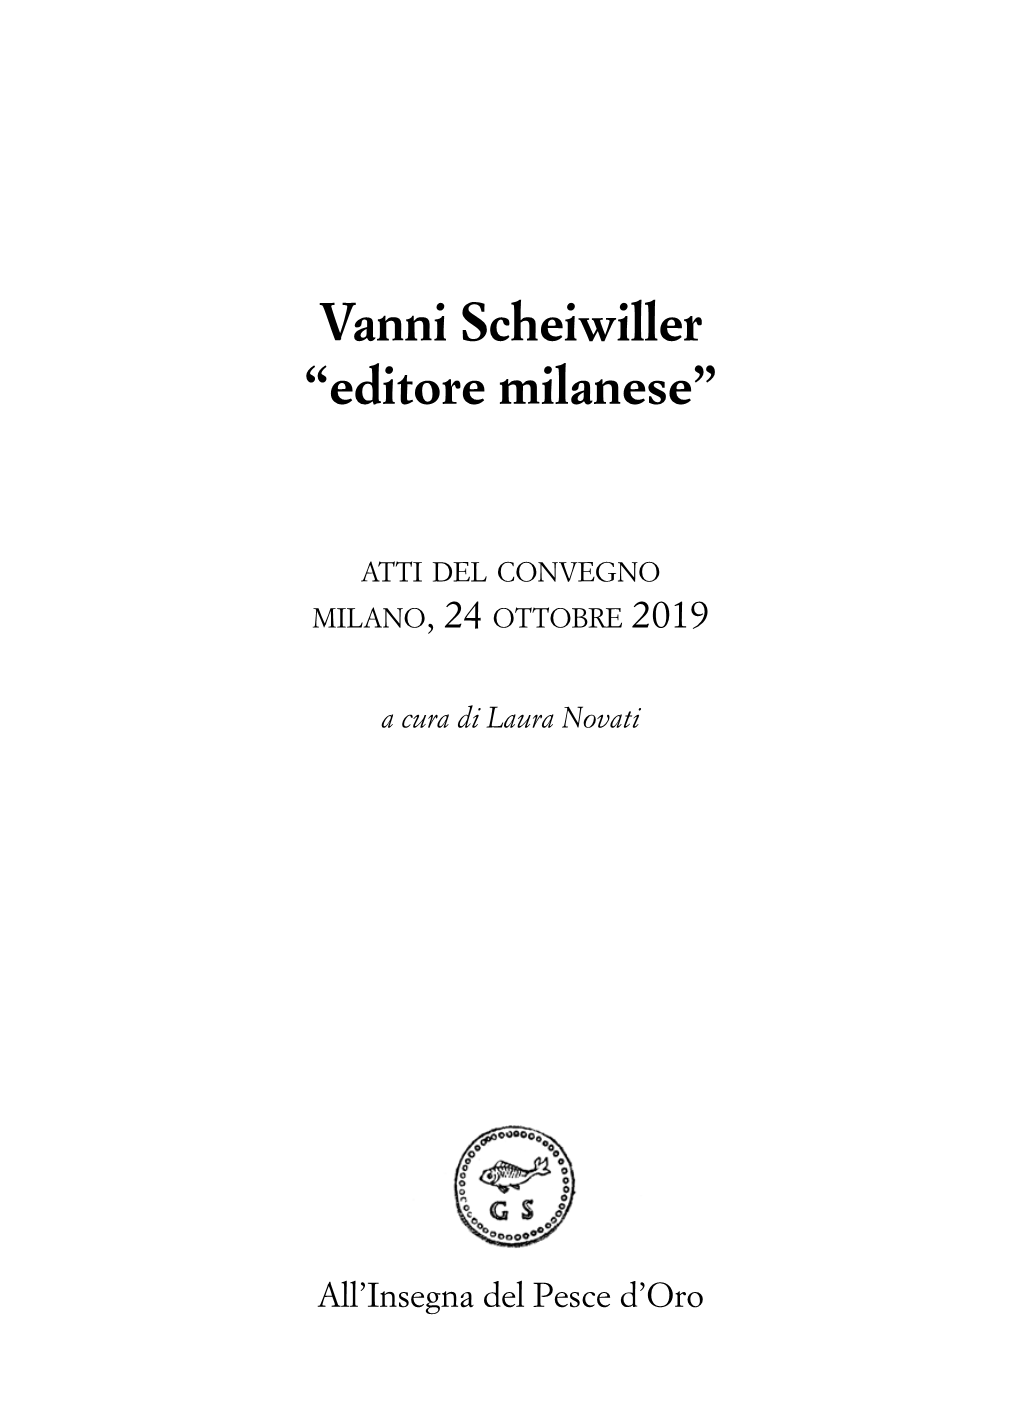 Vanni Scheiwiller “Editore Milanese”